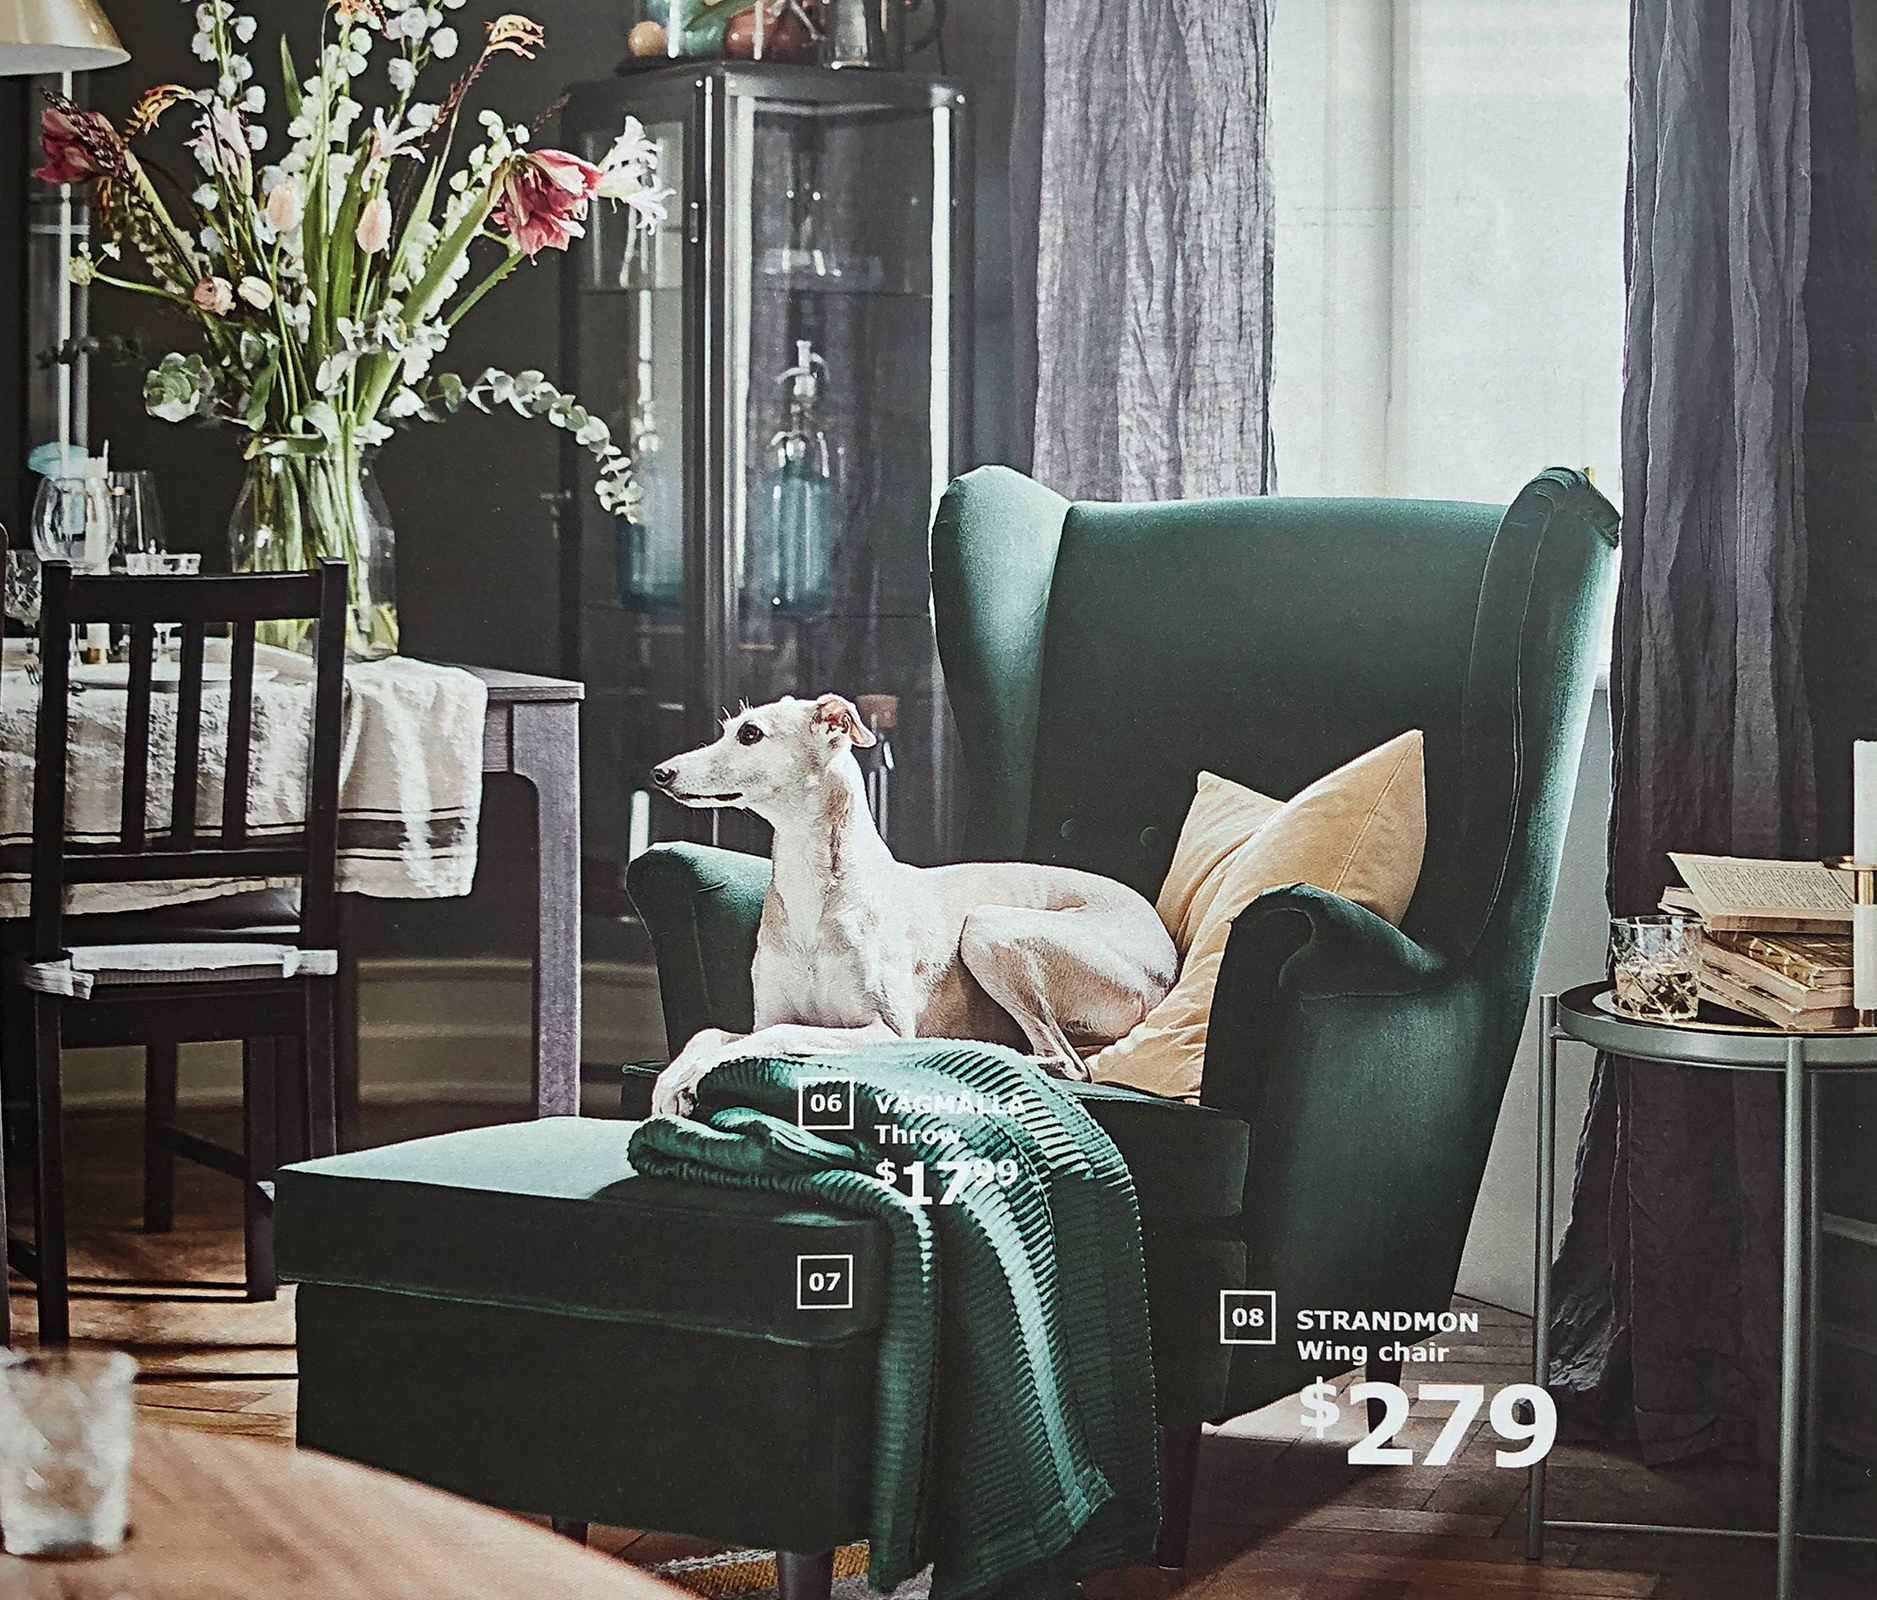 IKEA catalog 2019